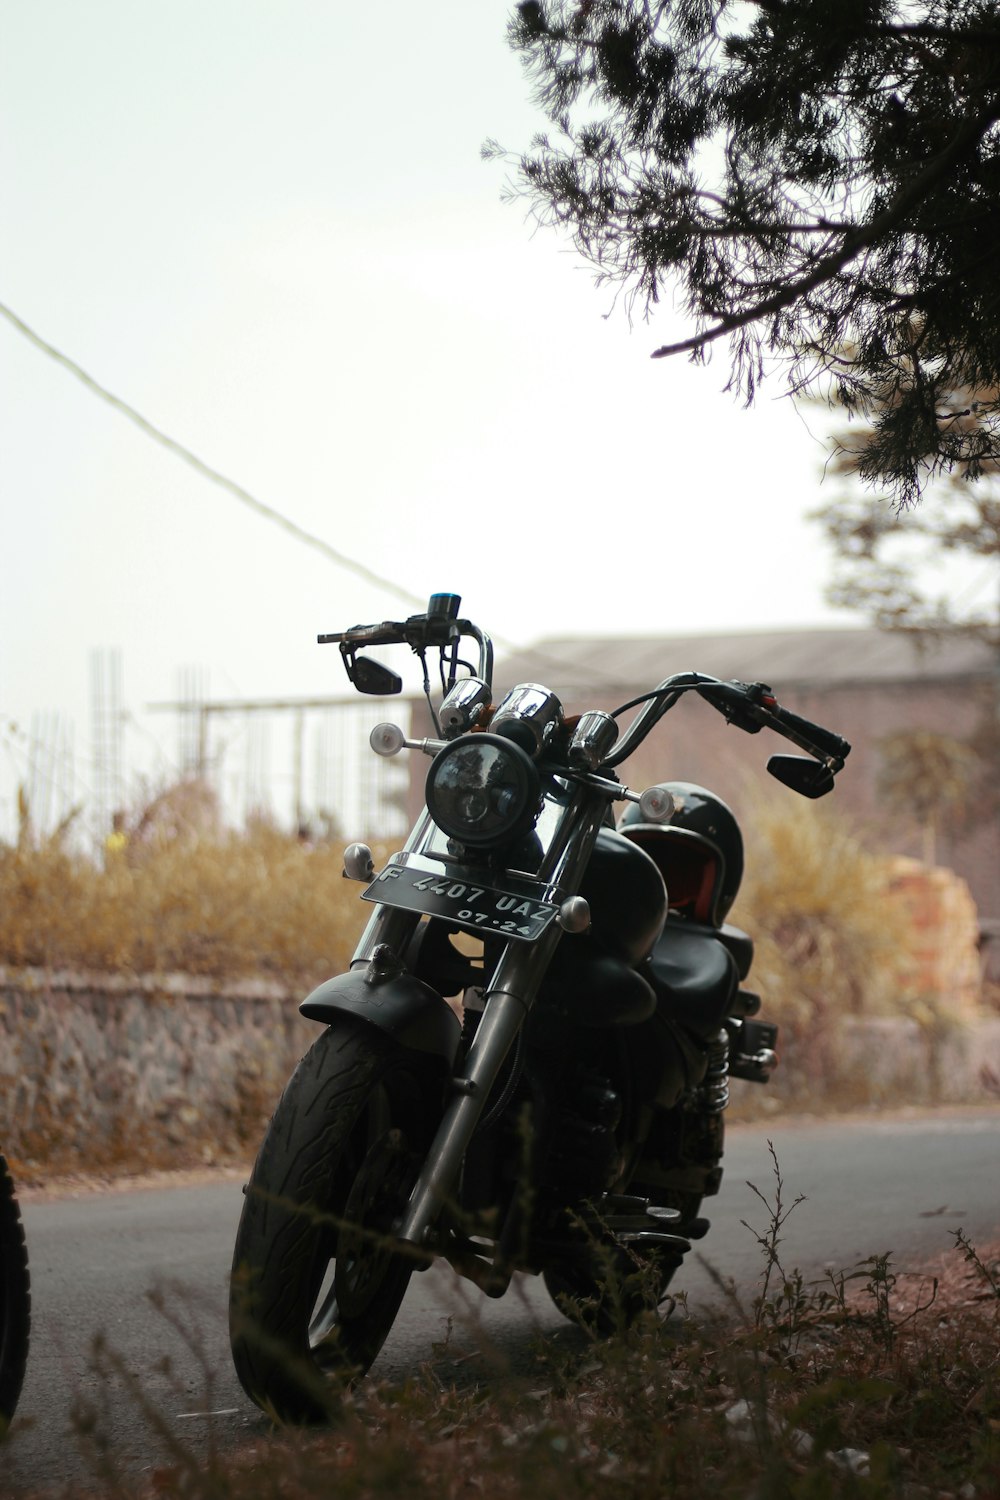 Motocicleta negra estacionada en la carretera durante el día